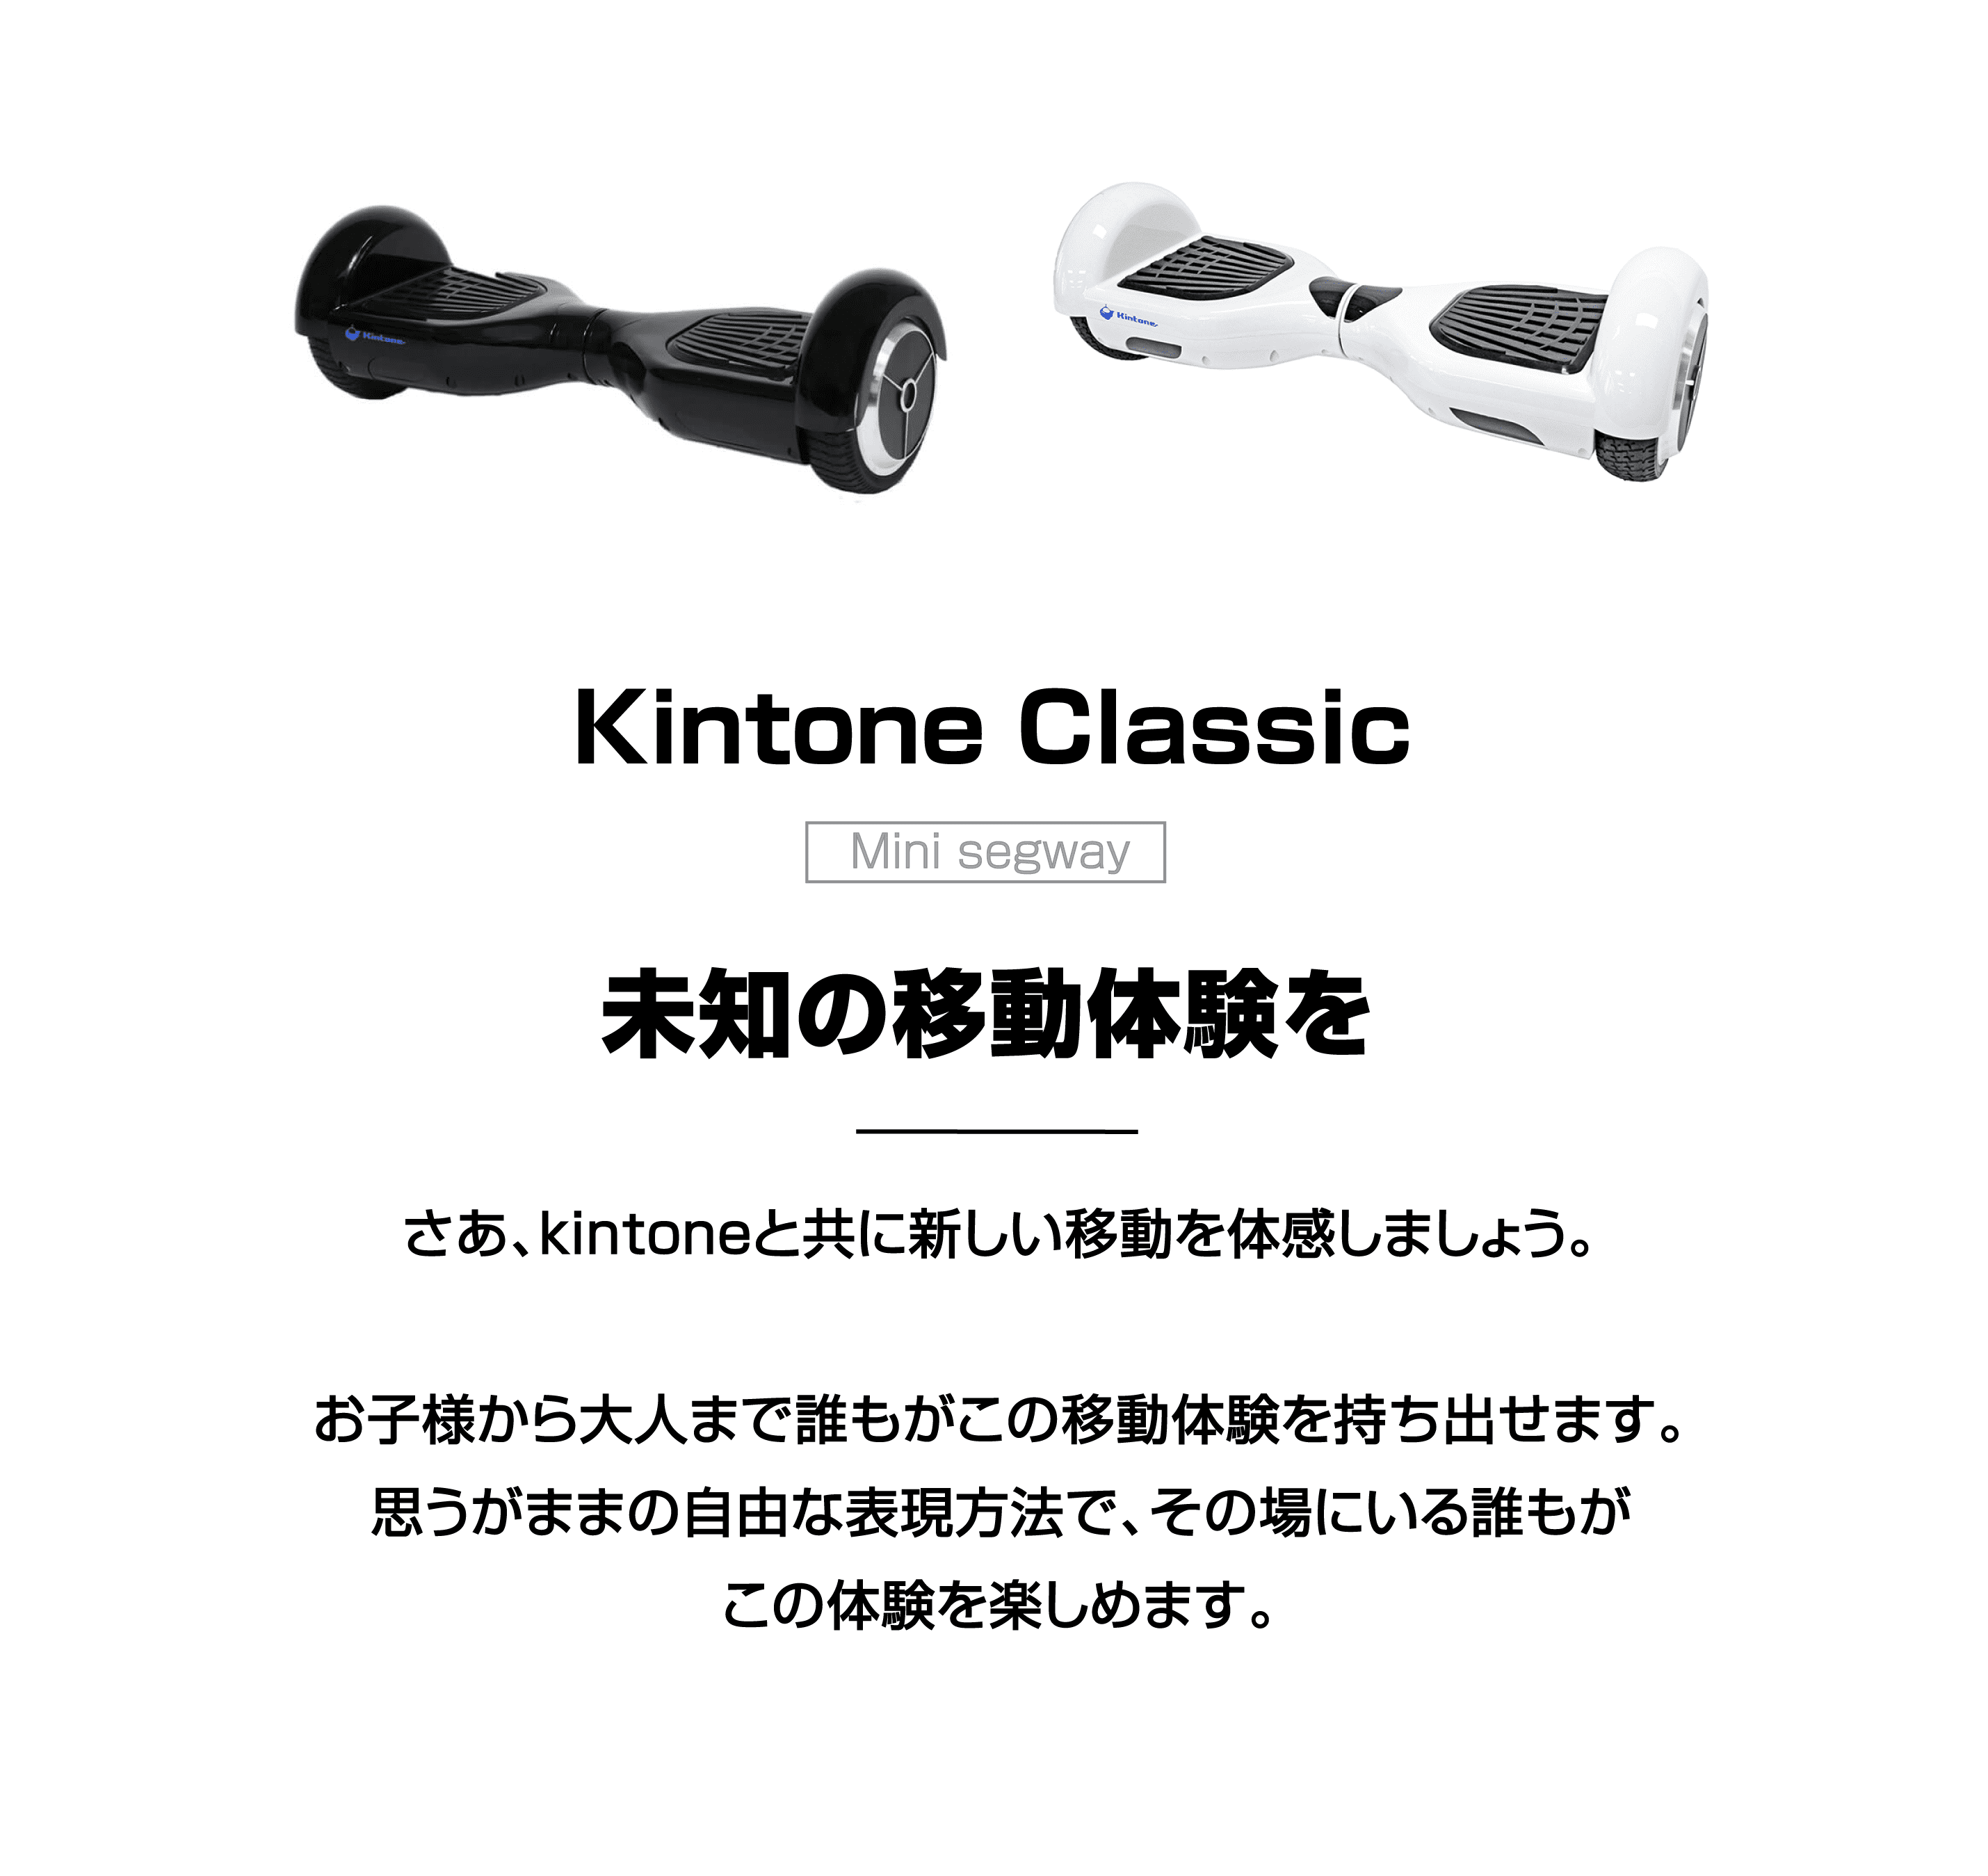 キントーン クラシック | Kintone Classic （ミニセグウェイ